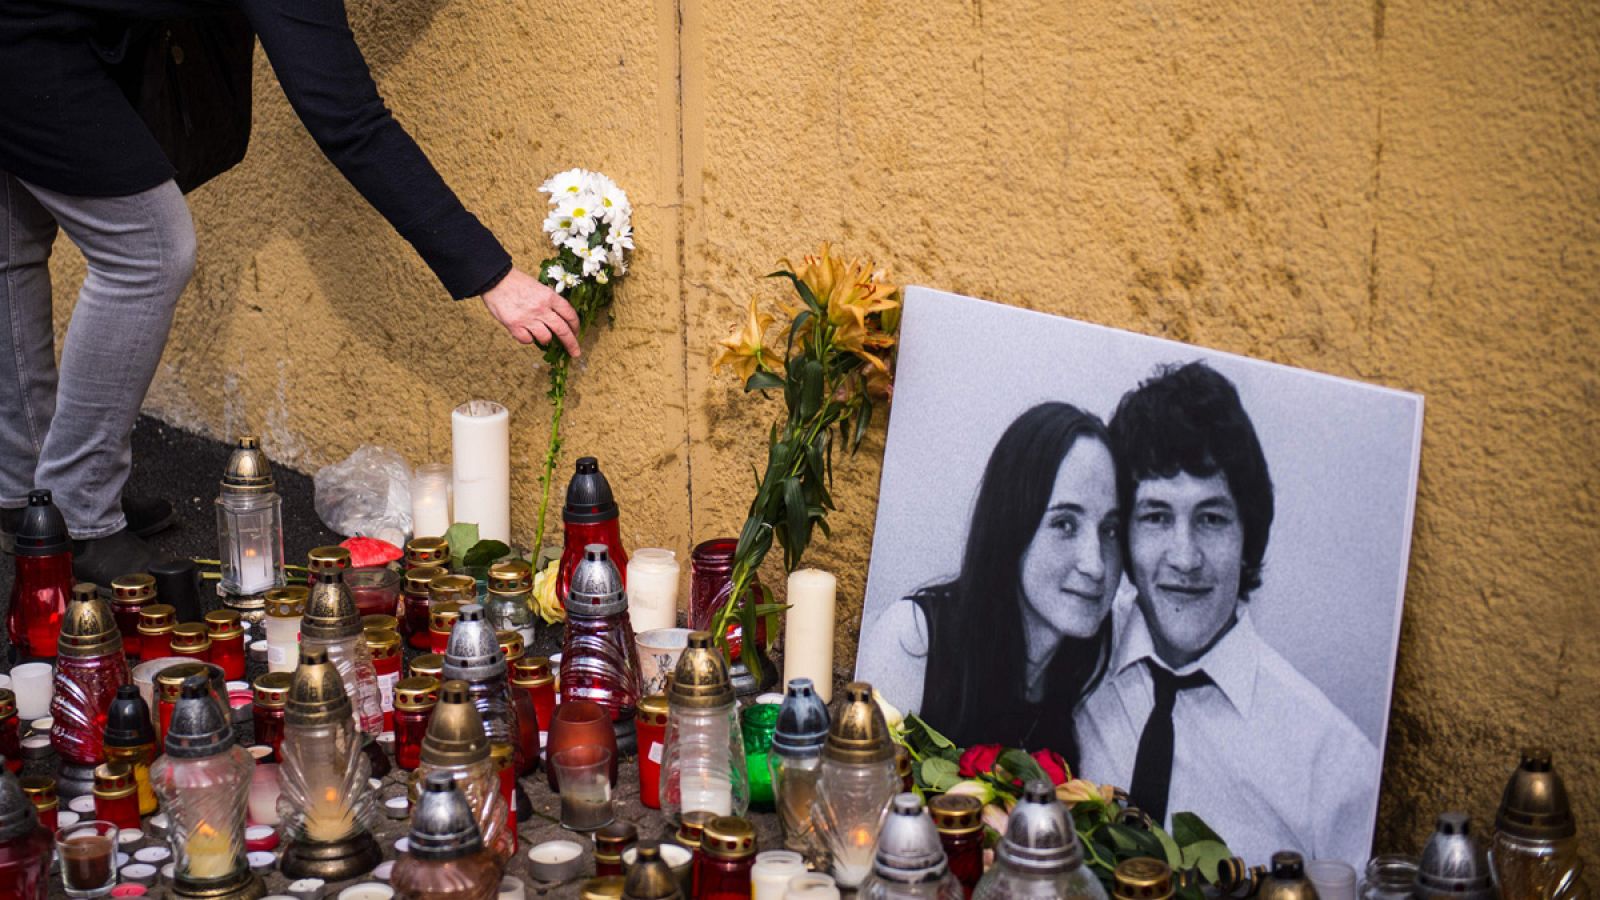 Una mujer coloca una vela junto a un retrato del periodista de investigación Jan Kuciak, asesinado junto a su novia en Bratislava